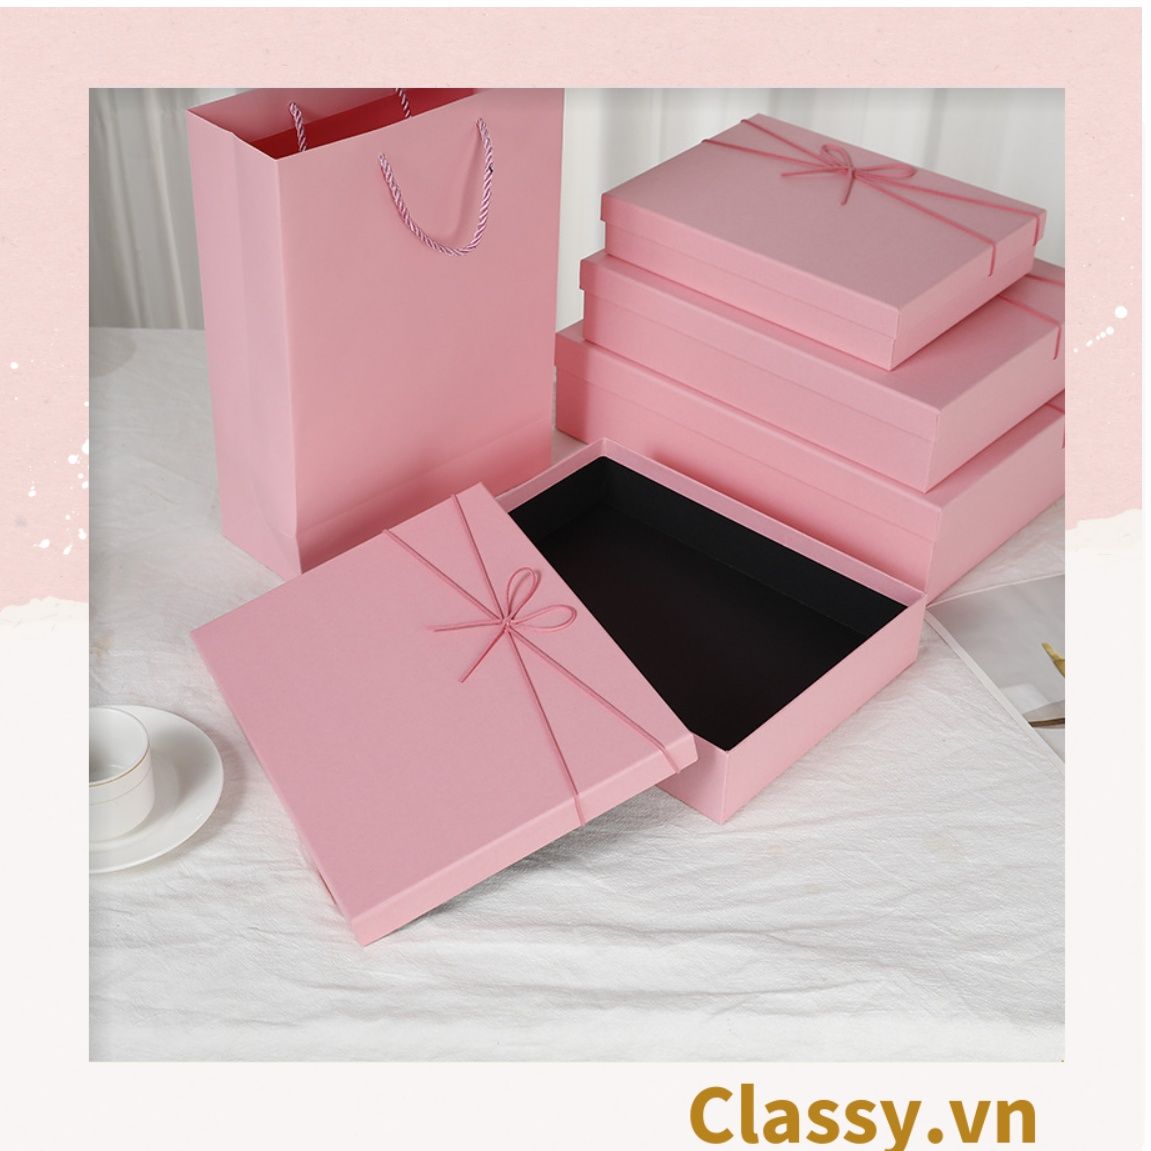  Classy Hộp quà tặng màu hồng trơn, chất liệu giấy cứng cáp Q1557 